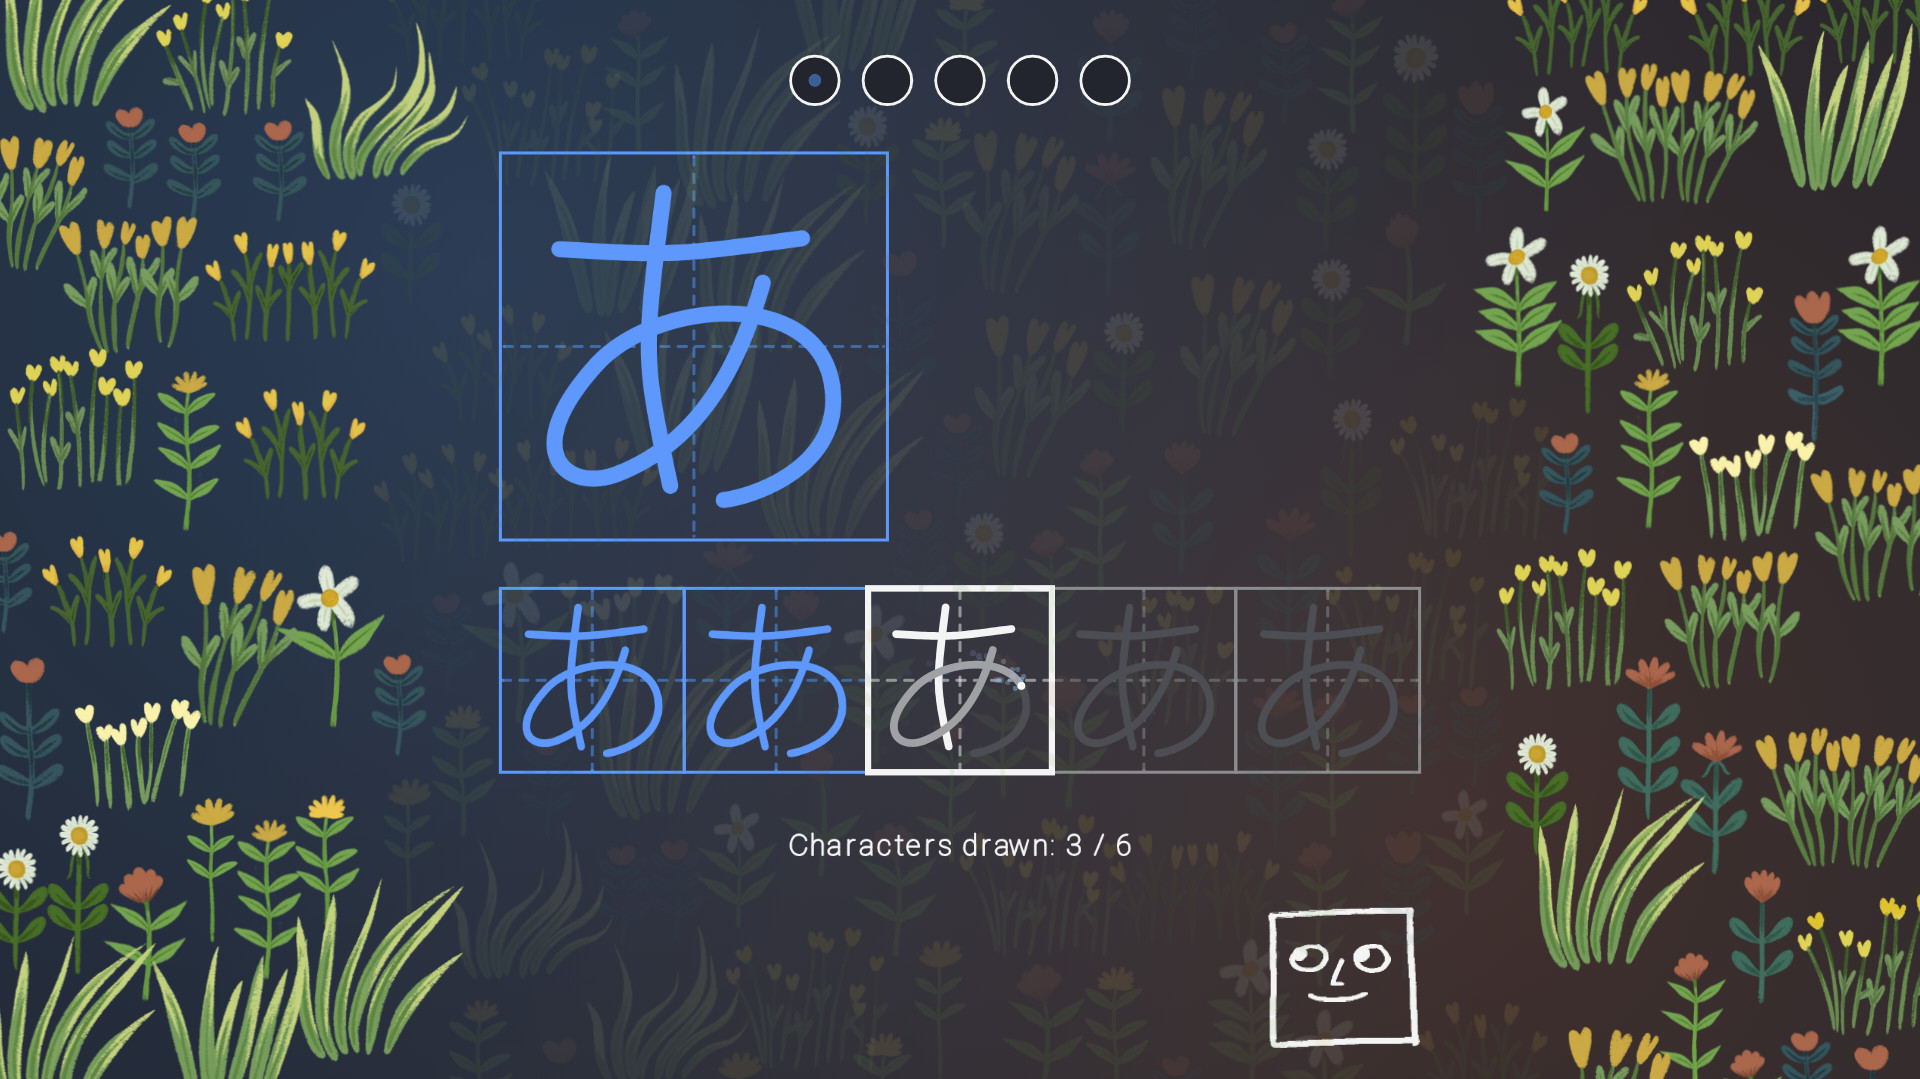 [$ 1.12] You Can Kana - Learn Japanese Hiragana & Katakana Steam CD Key